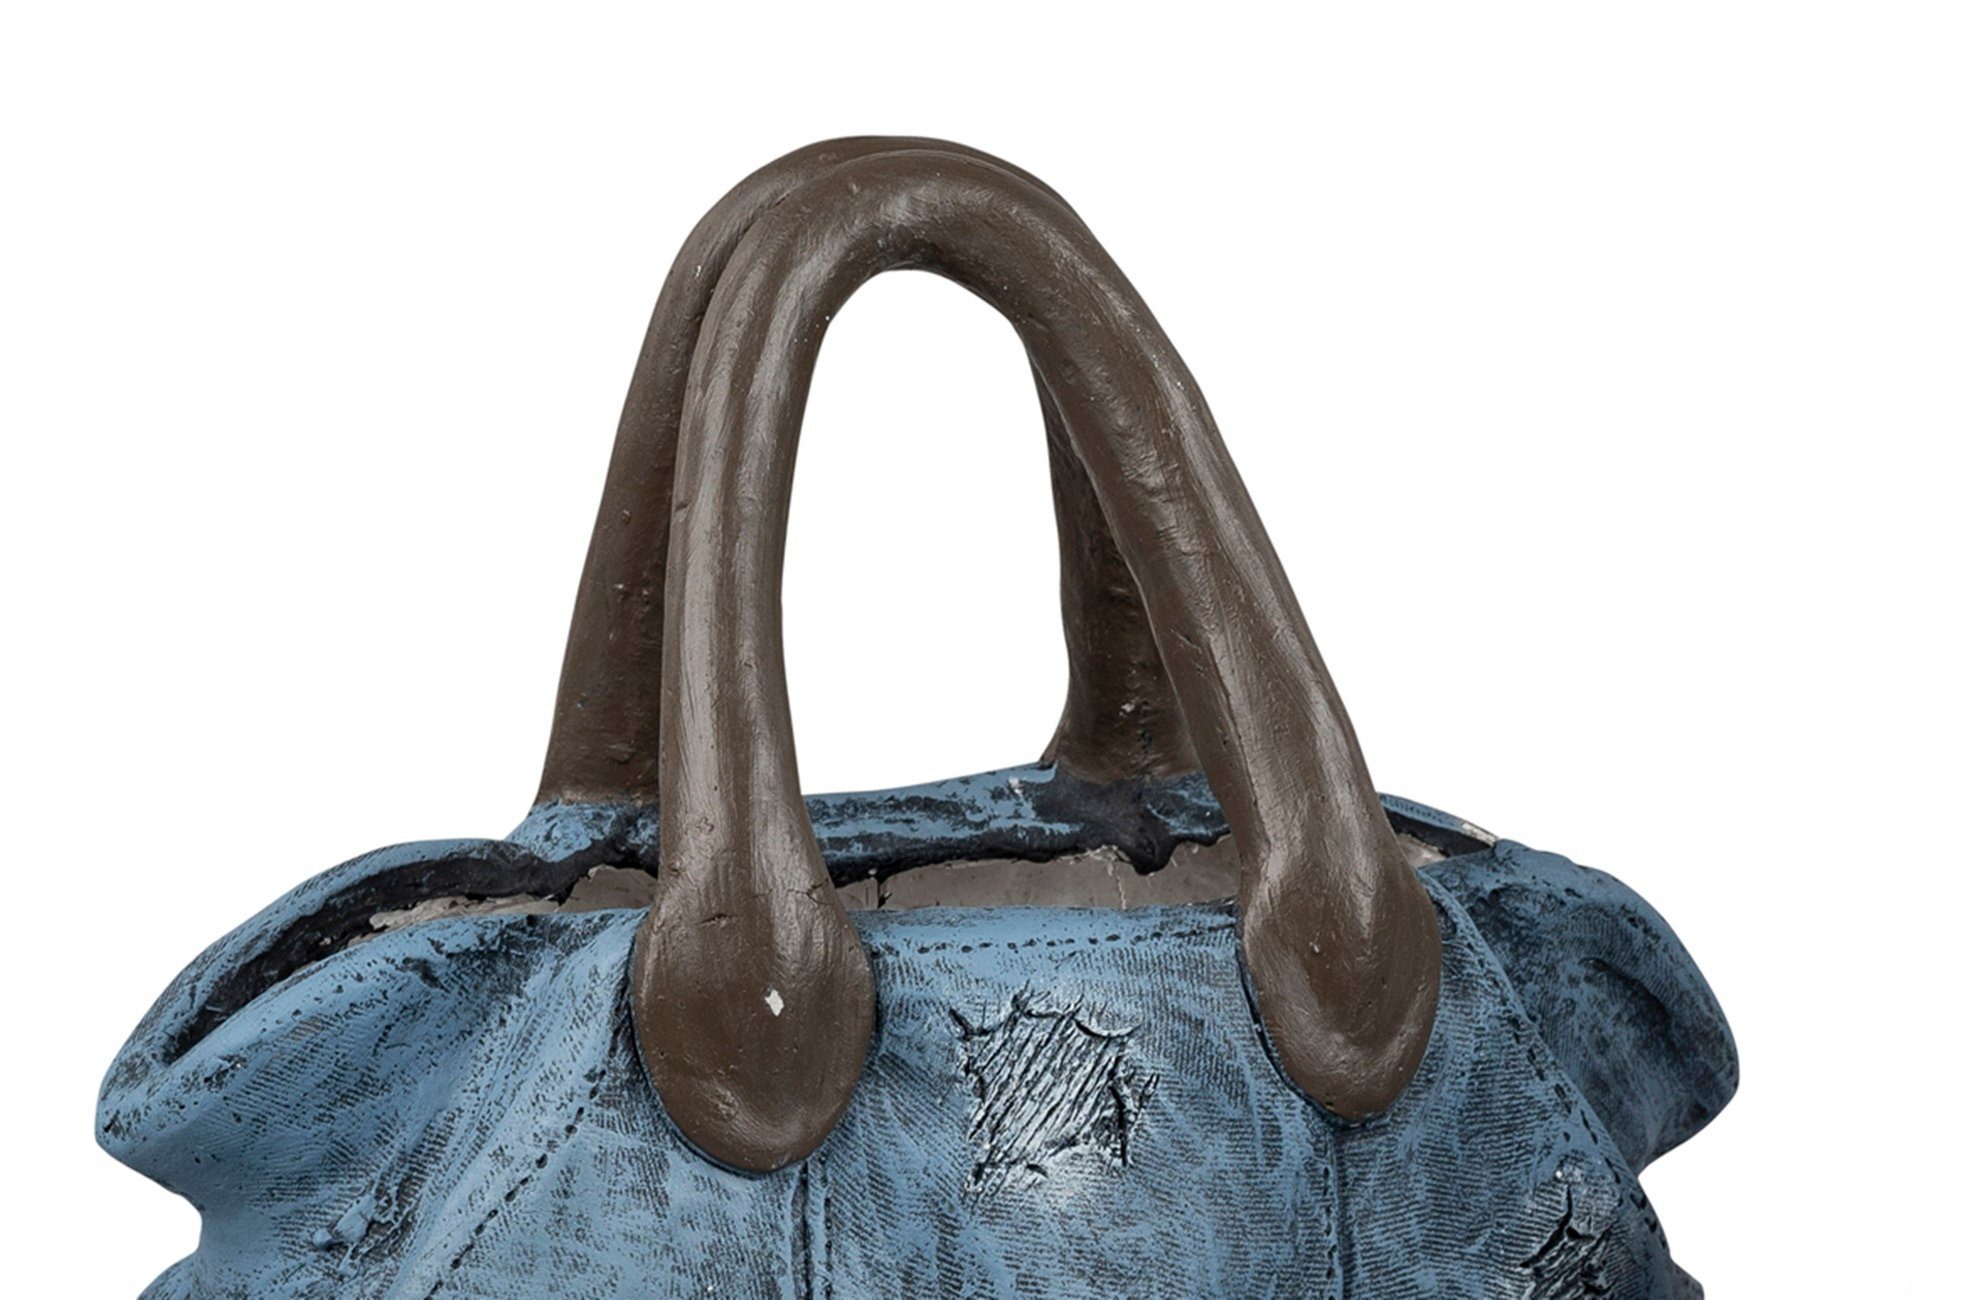 dekojohnson Blumentopf Deko-Handtasche zum Bepflanzen blau 33x37cm